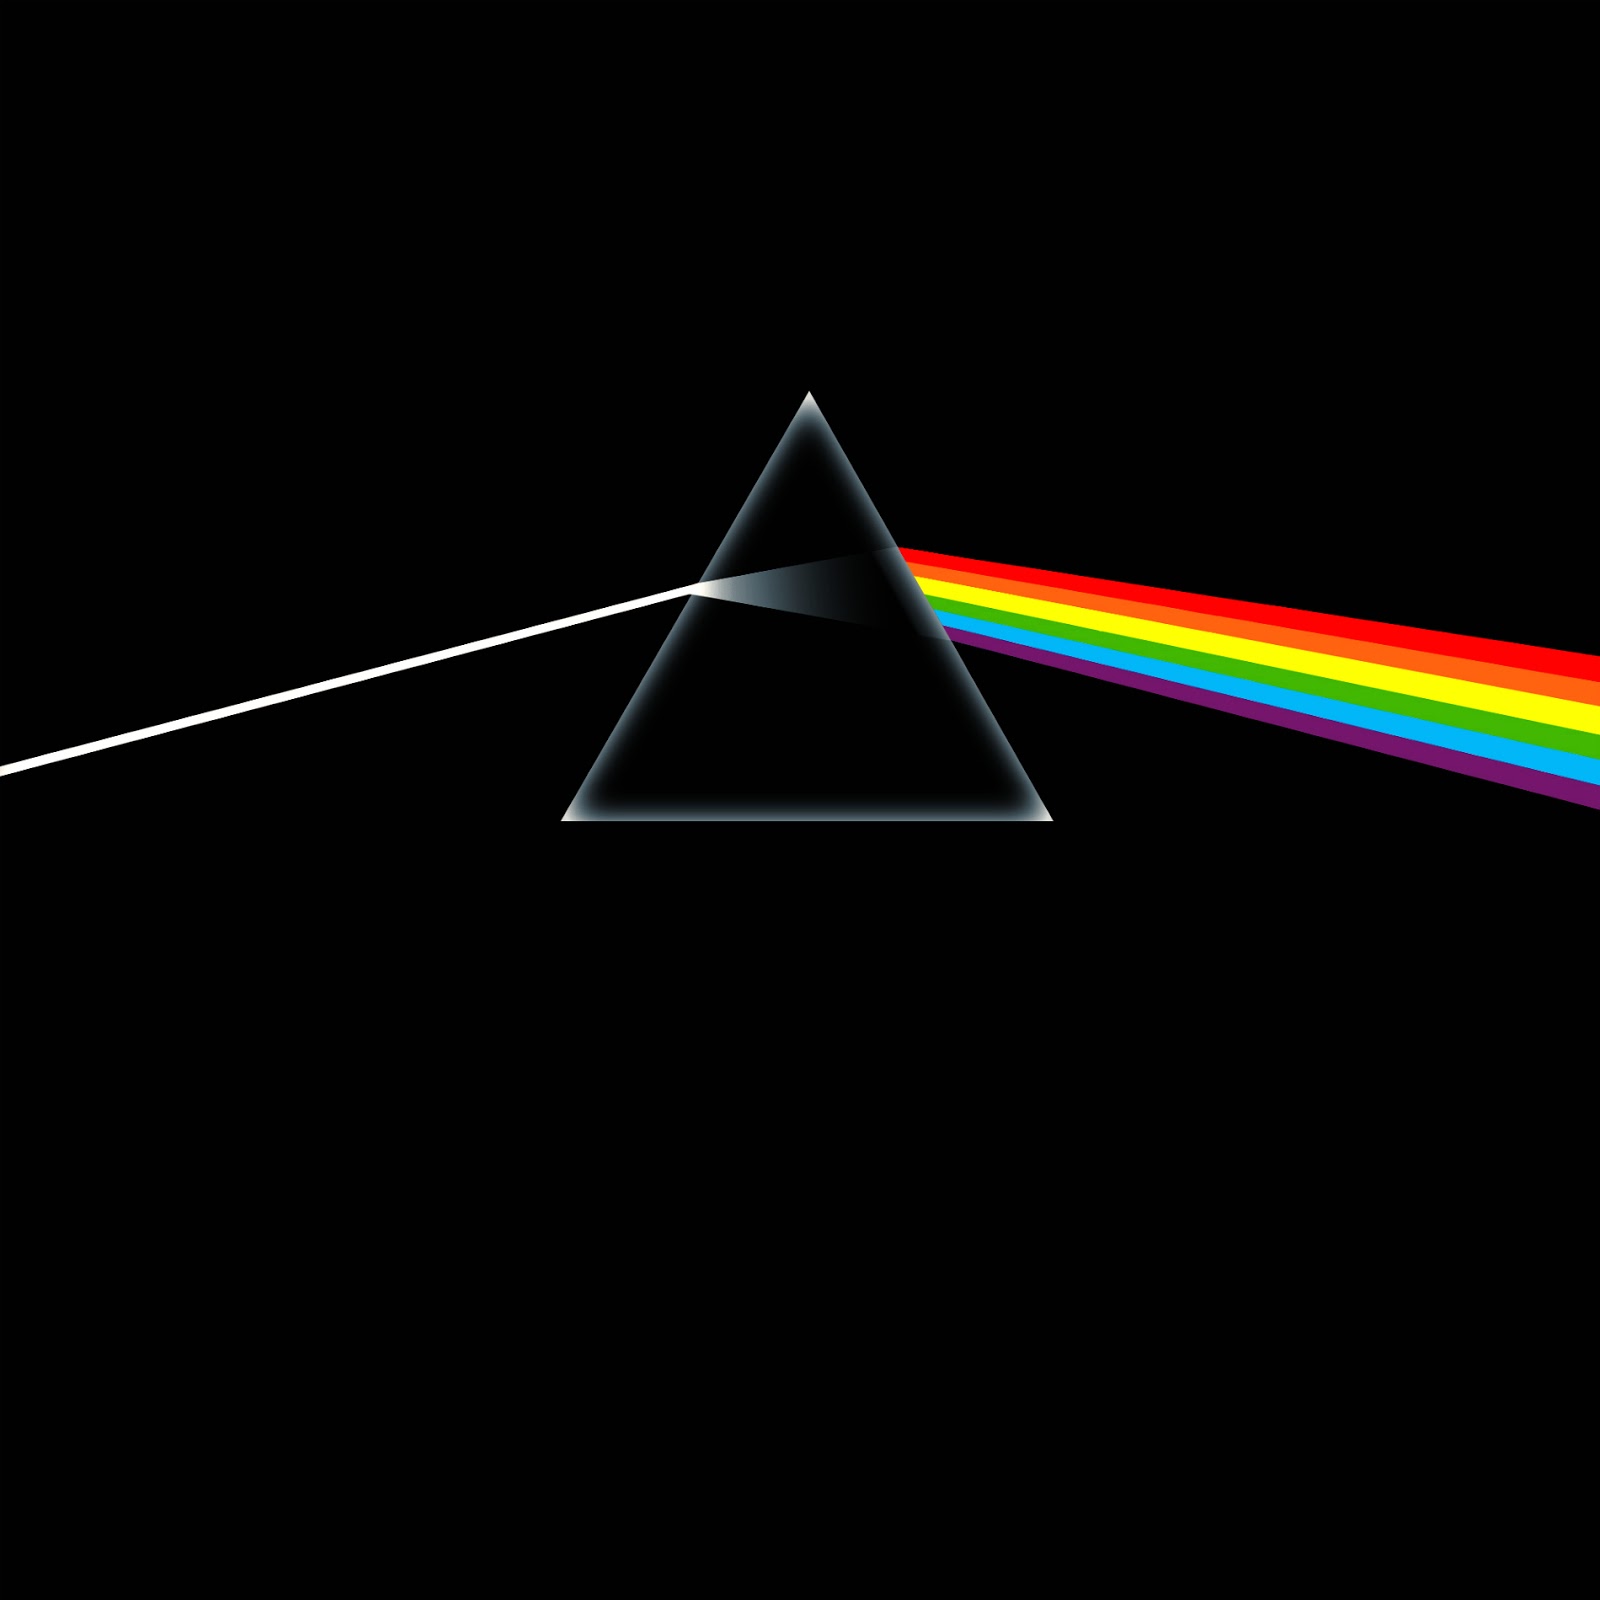 HeRock's Tech Blog: Pink Floyd - Dark Side of The Moon FULL ALBUM Free